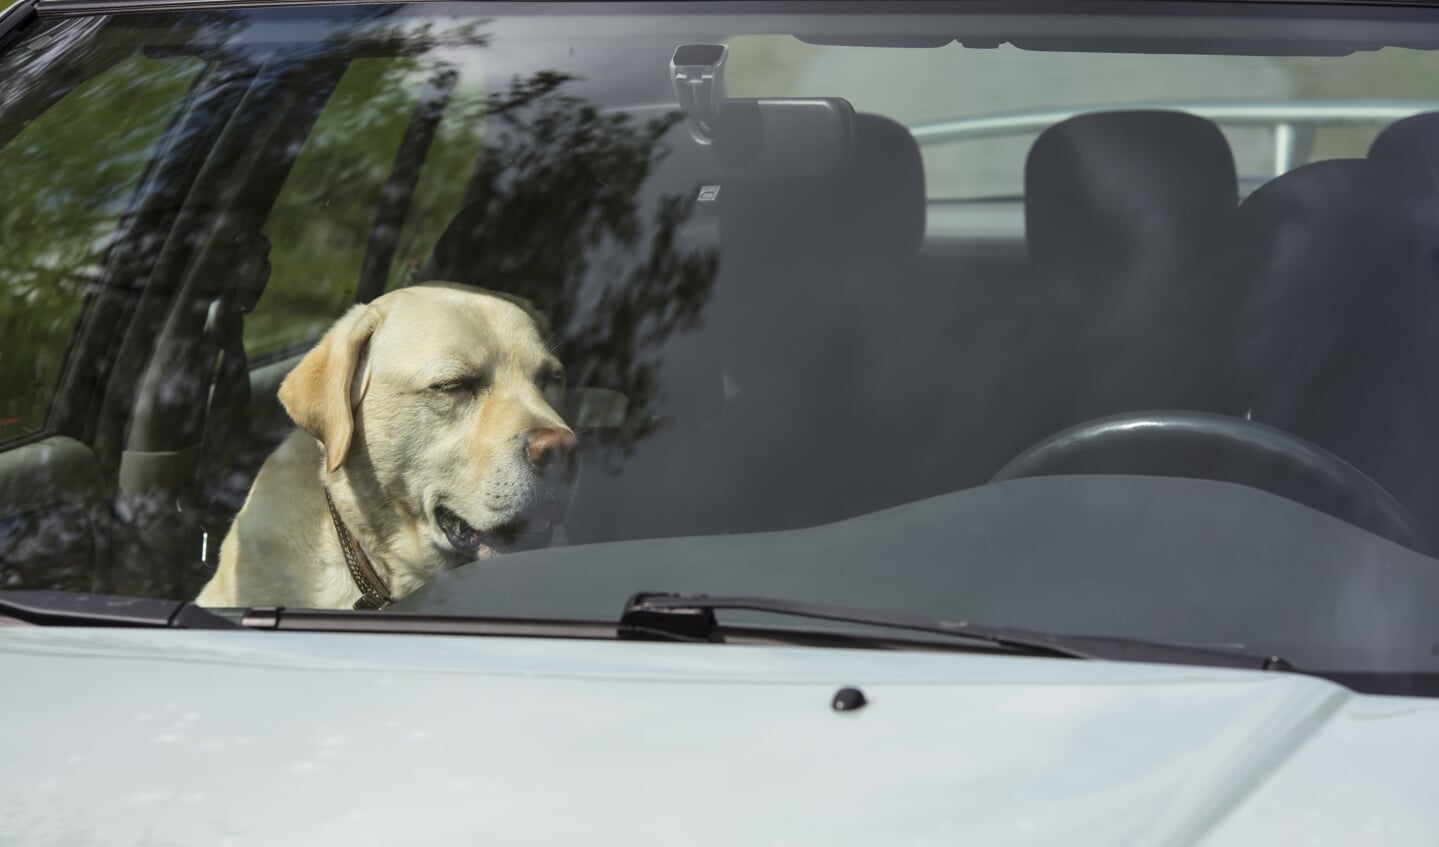 De temperatuur in de auto loopt al snel op boven de 40 graden, wat fataal is voor honden.